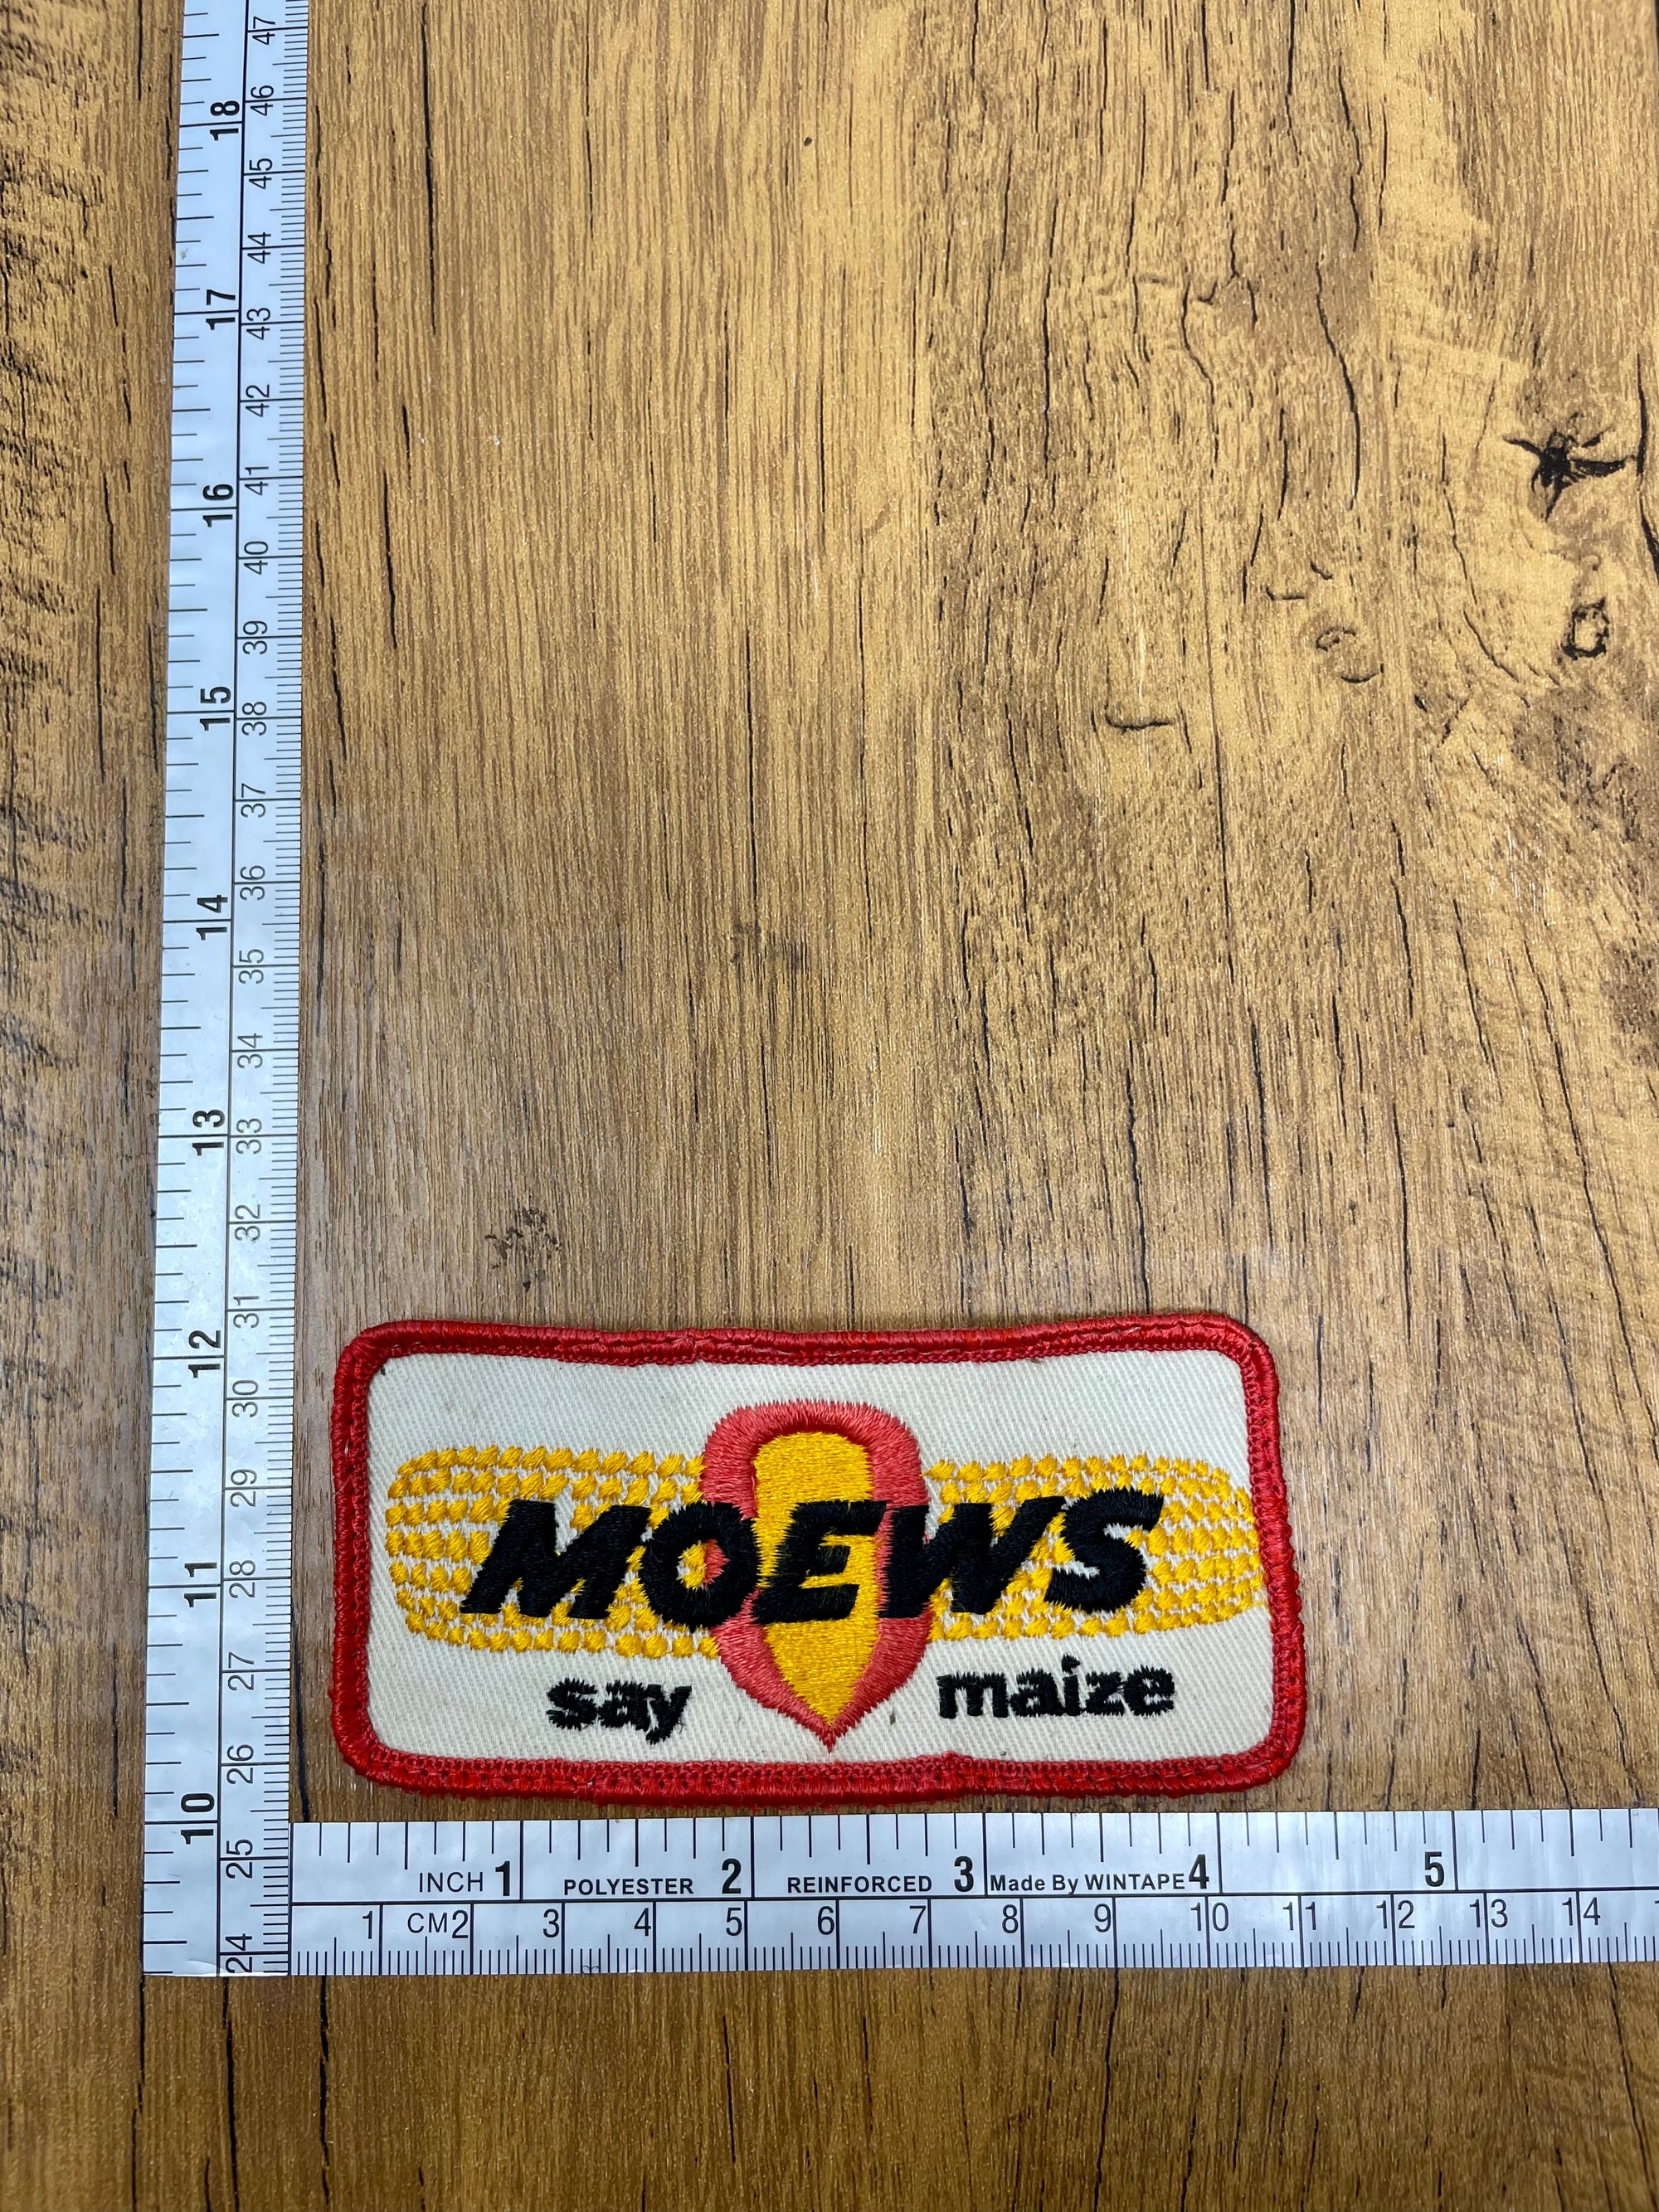 Vintage Moews